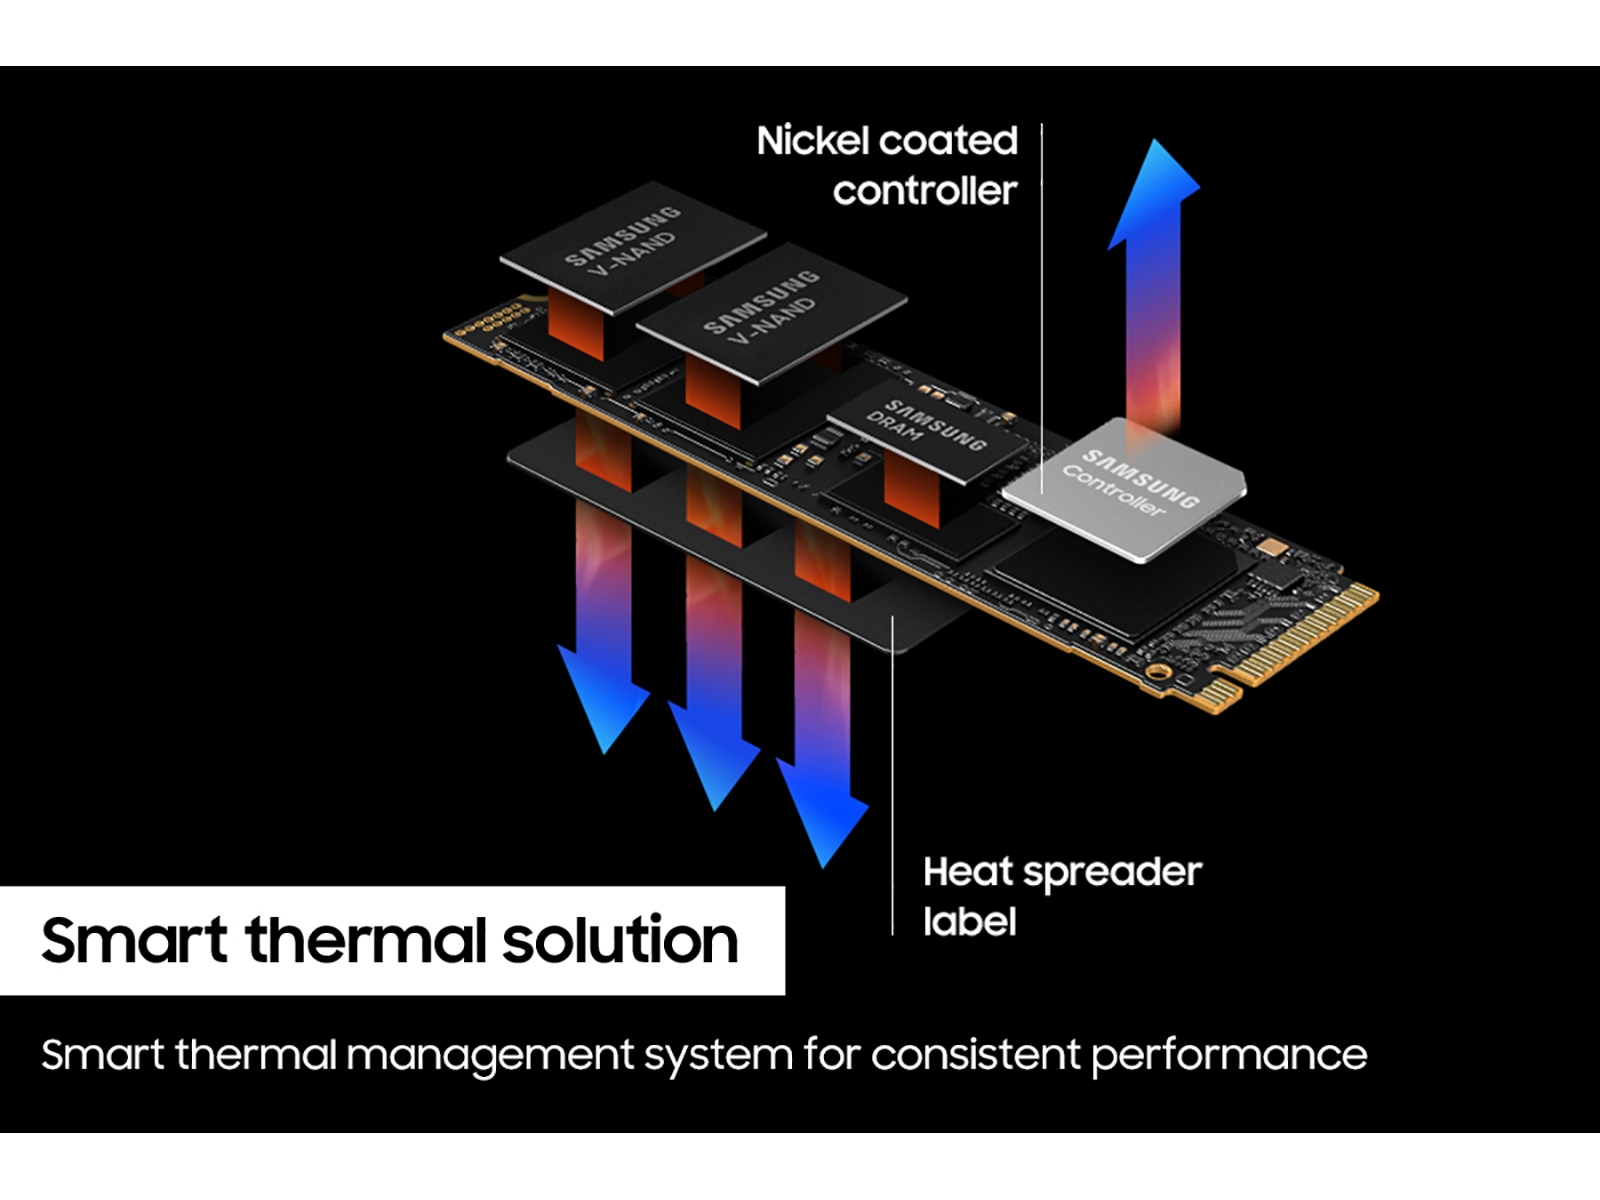 Thumbnail image of 990 PRO PCIe&lt;sup&gt;&reg;&lt;/sup&gt; 4.0 NVMe&lt;sup&gt;&reg;&lt;/sup&gt; SSD 1TB